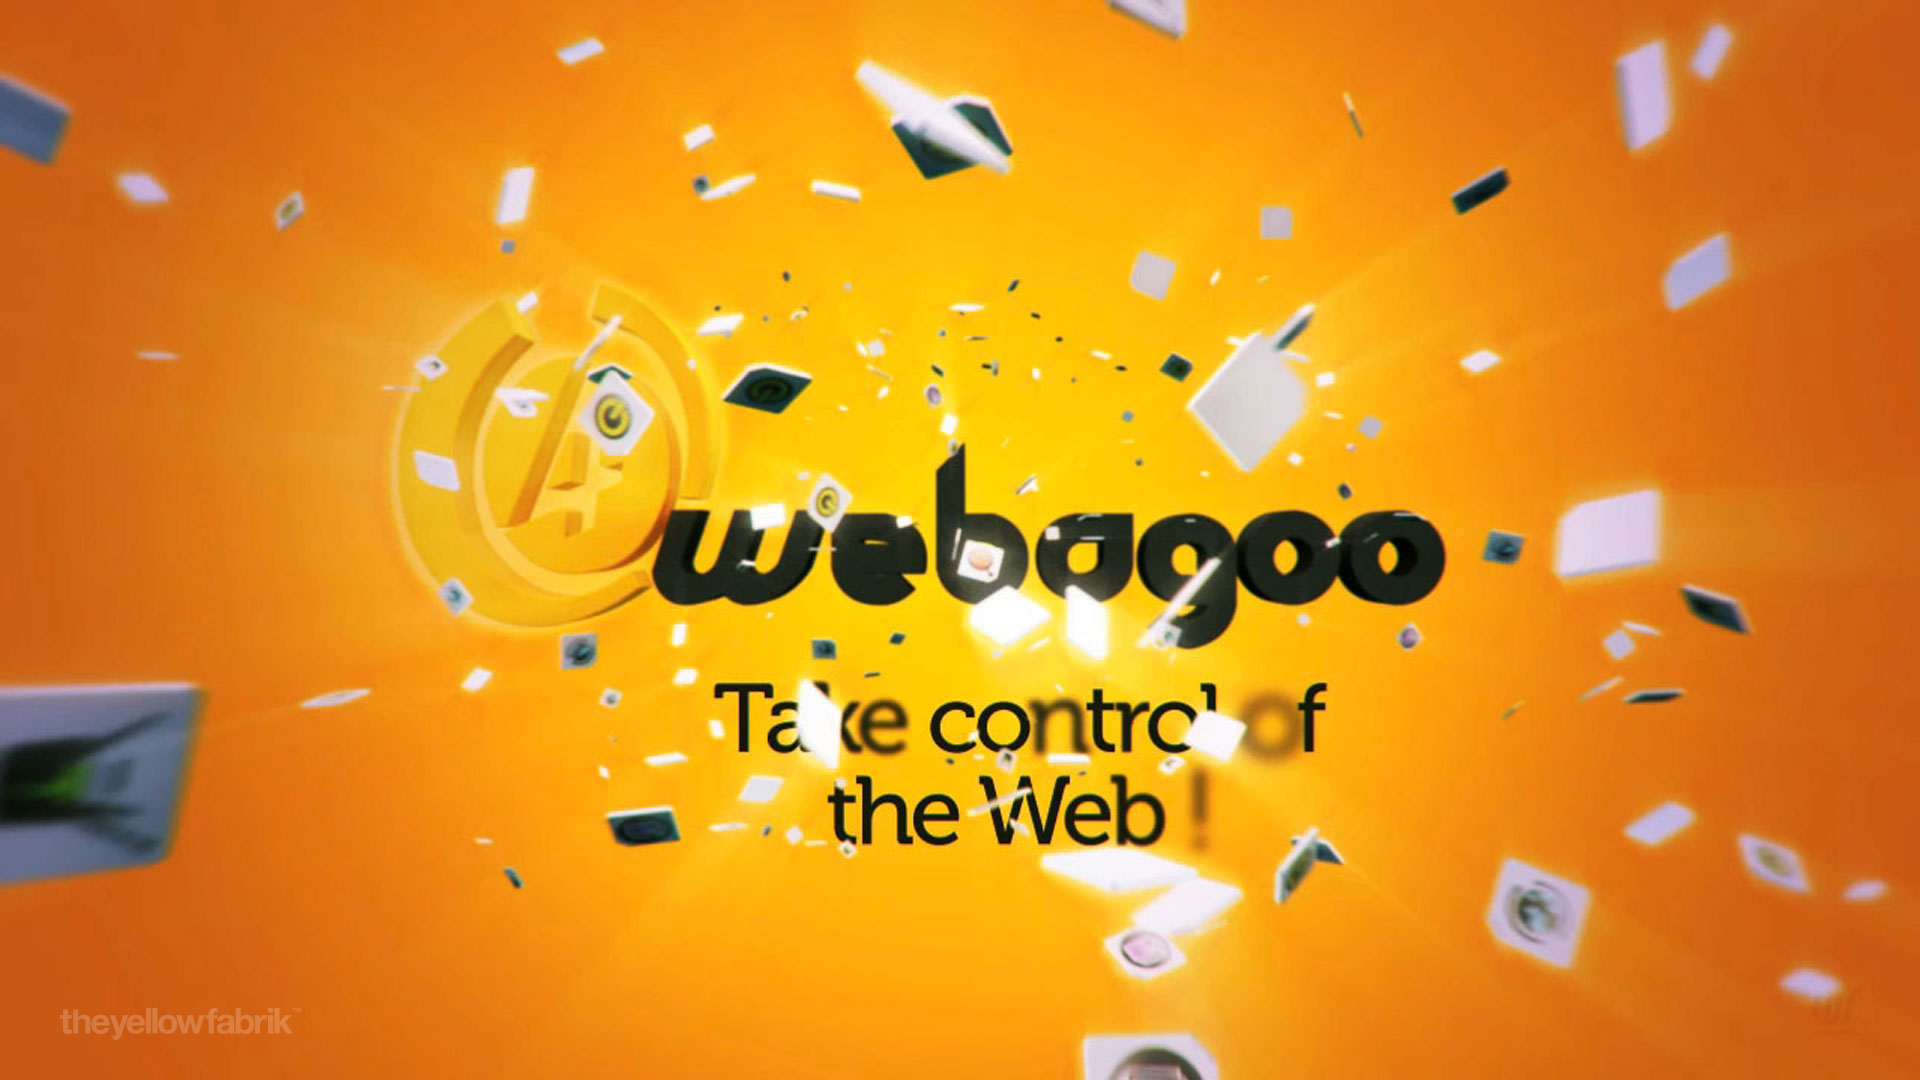 Webagoo